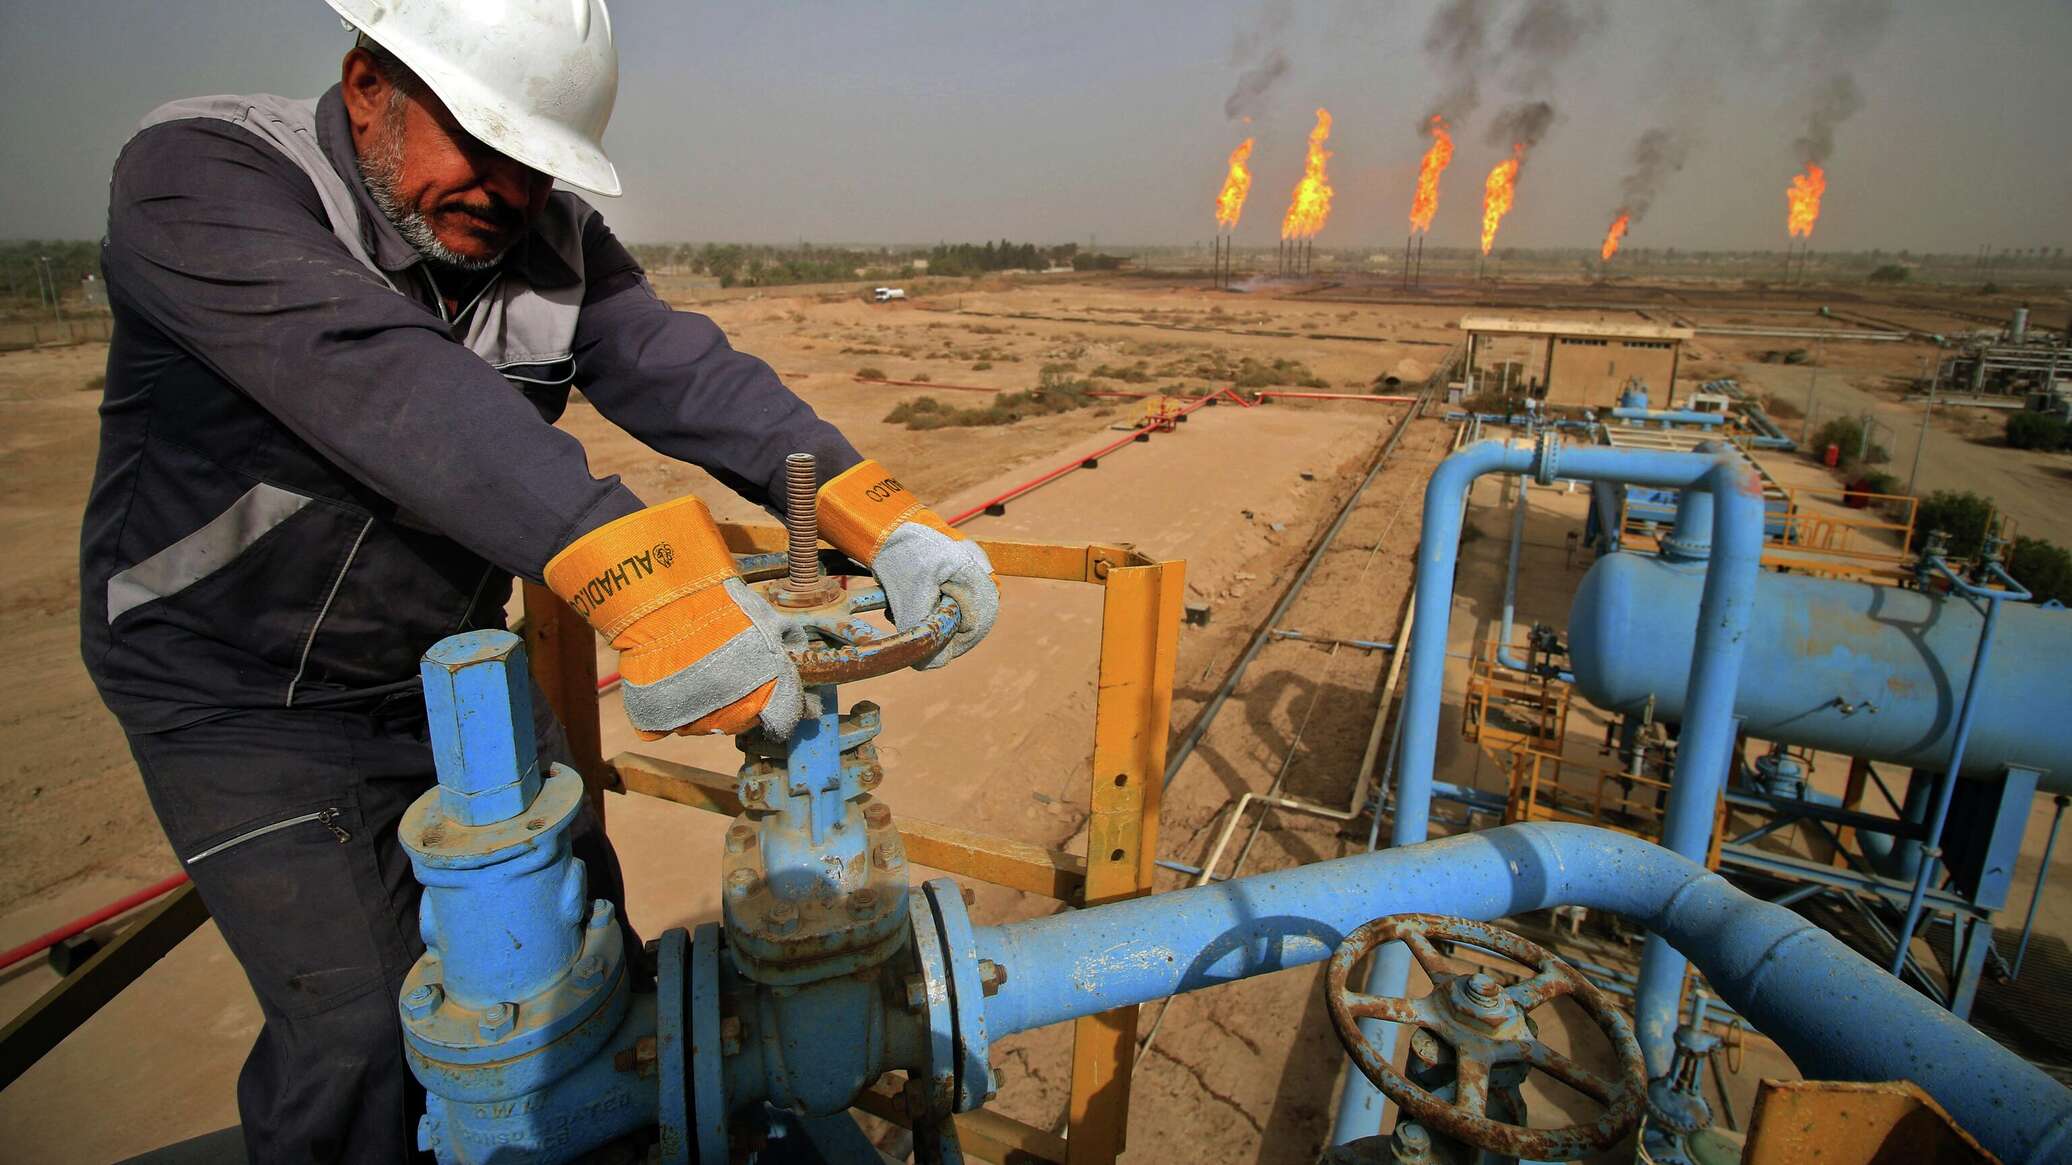 النفط العراقية: إنتاج مصافي الجنوب وصل لـ280 ألف برميل يوميا